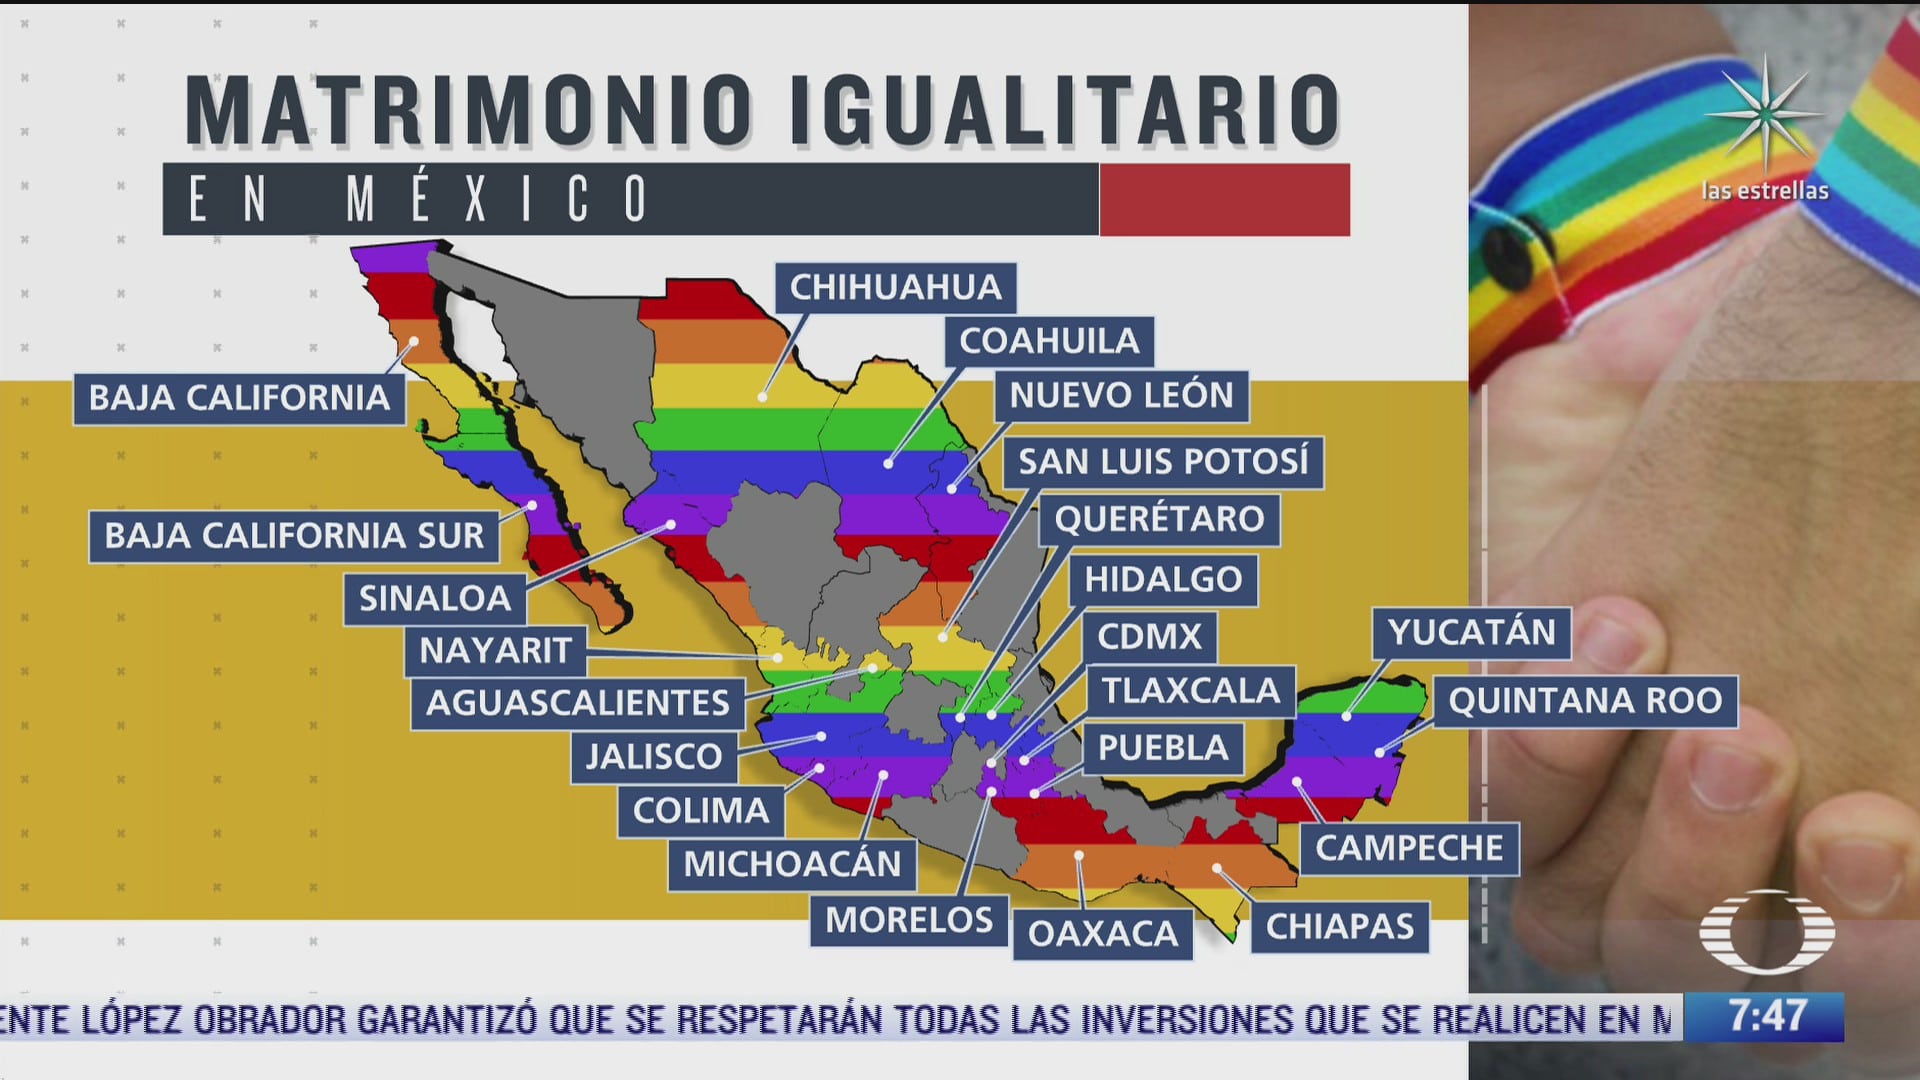 ademas de queretaro que estados de la republica mexicana han aprobado el matrimonio igualitario